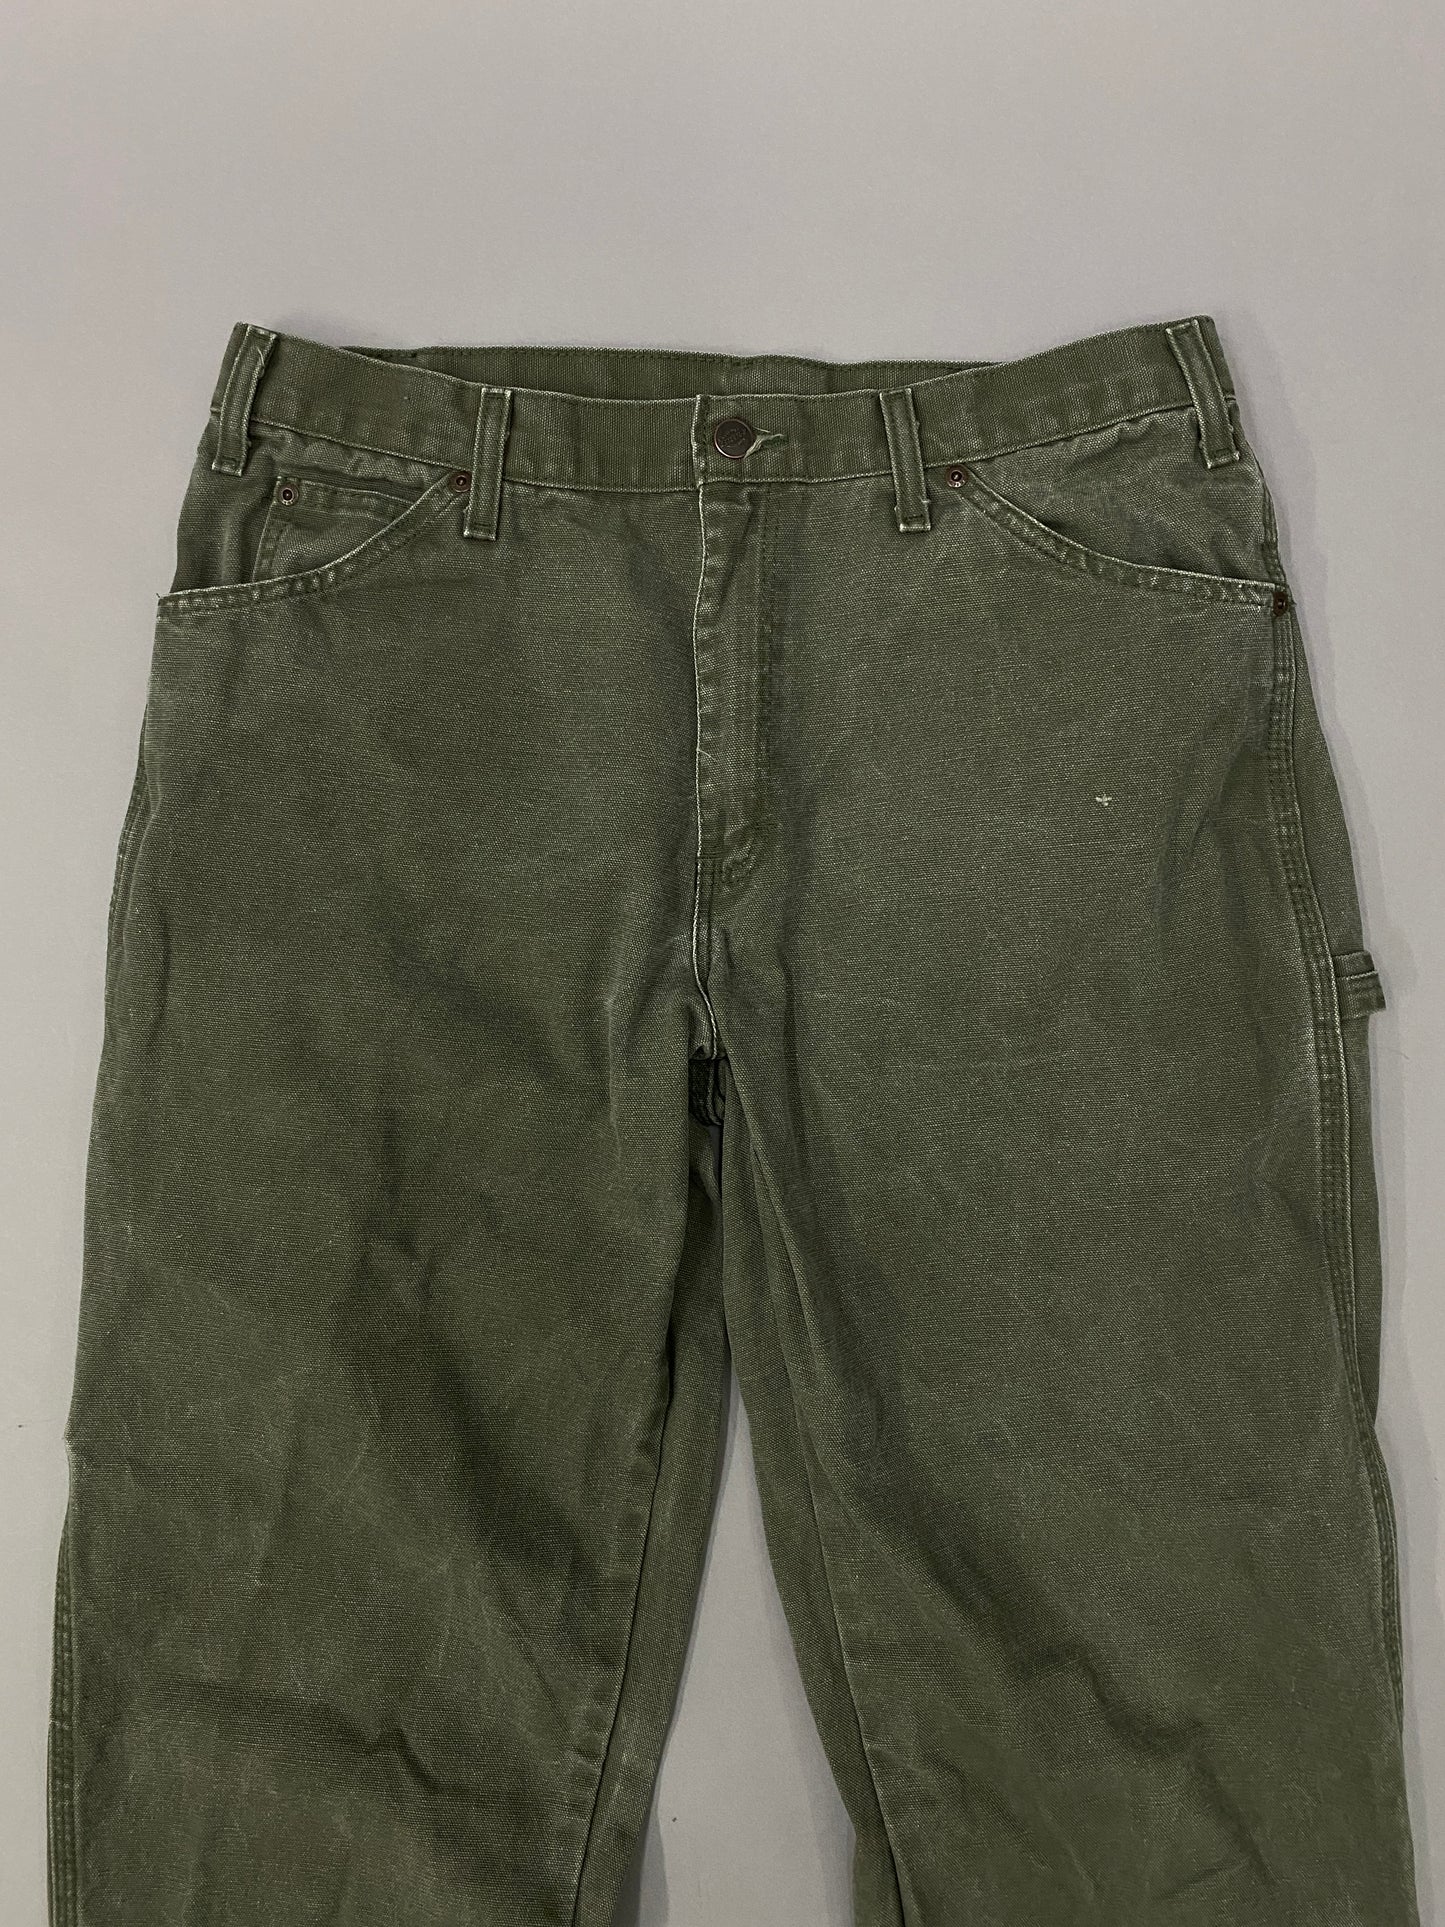 Dickies Vintage Carpenter Jeans - 33